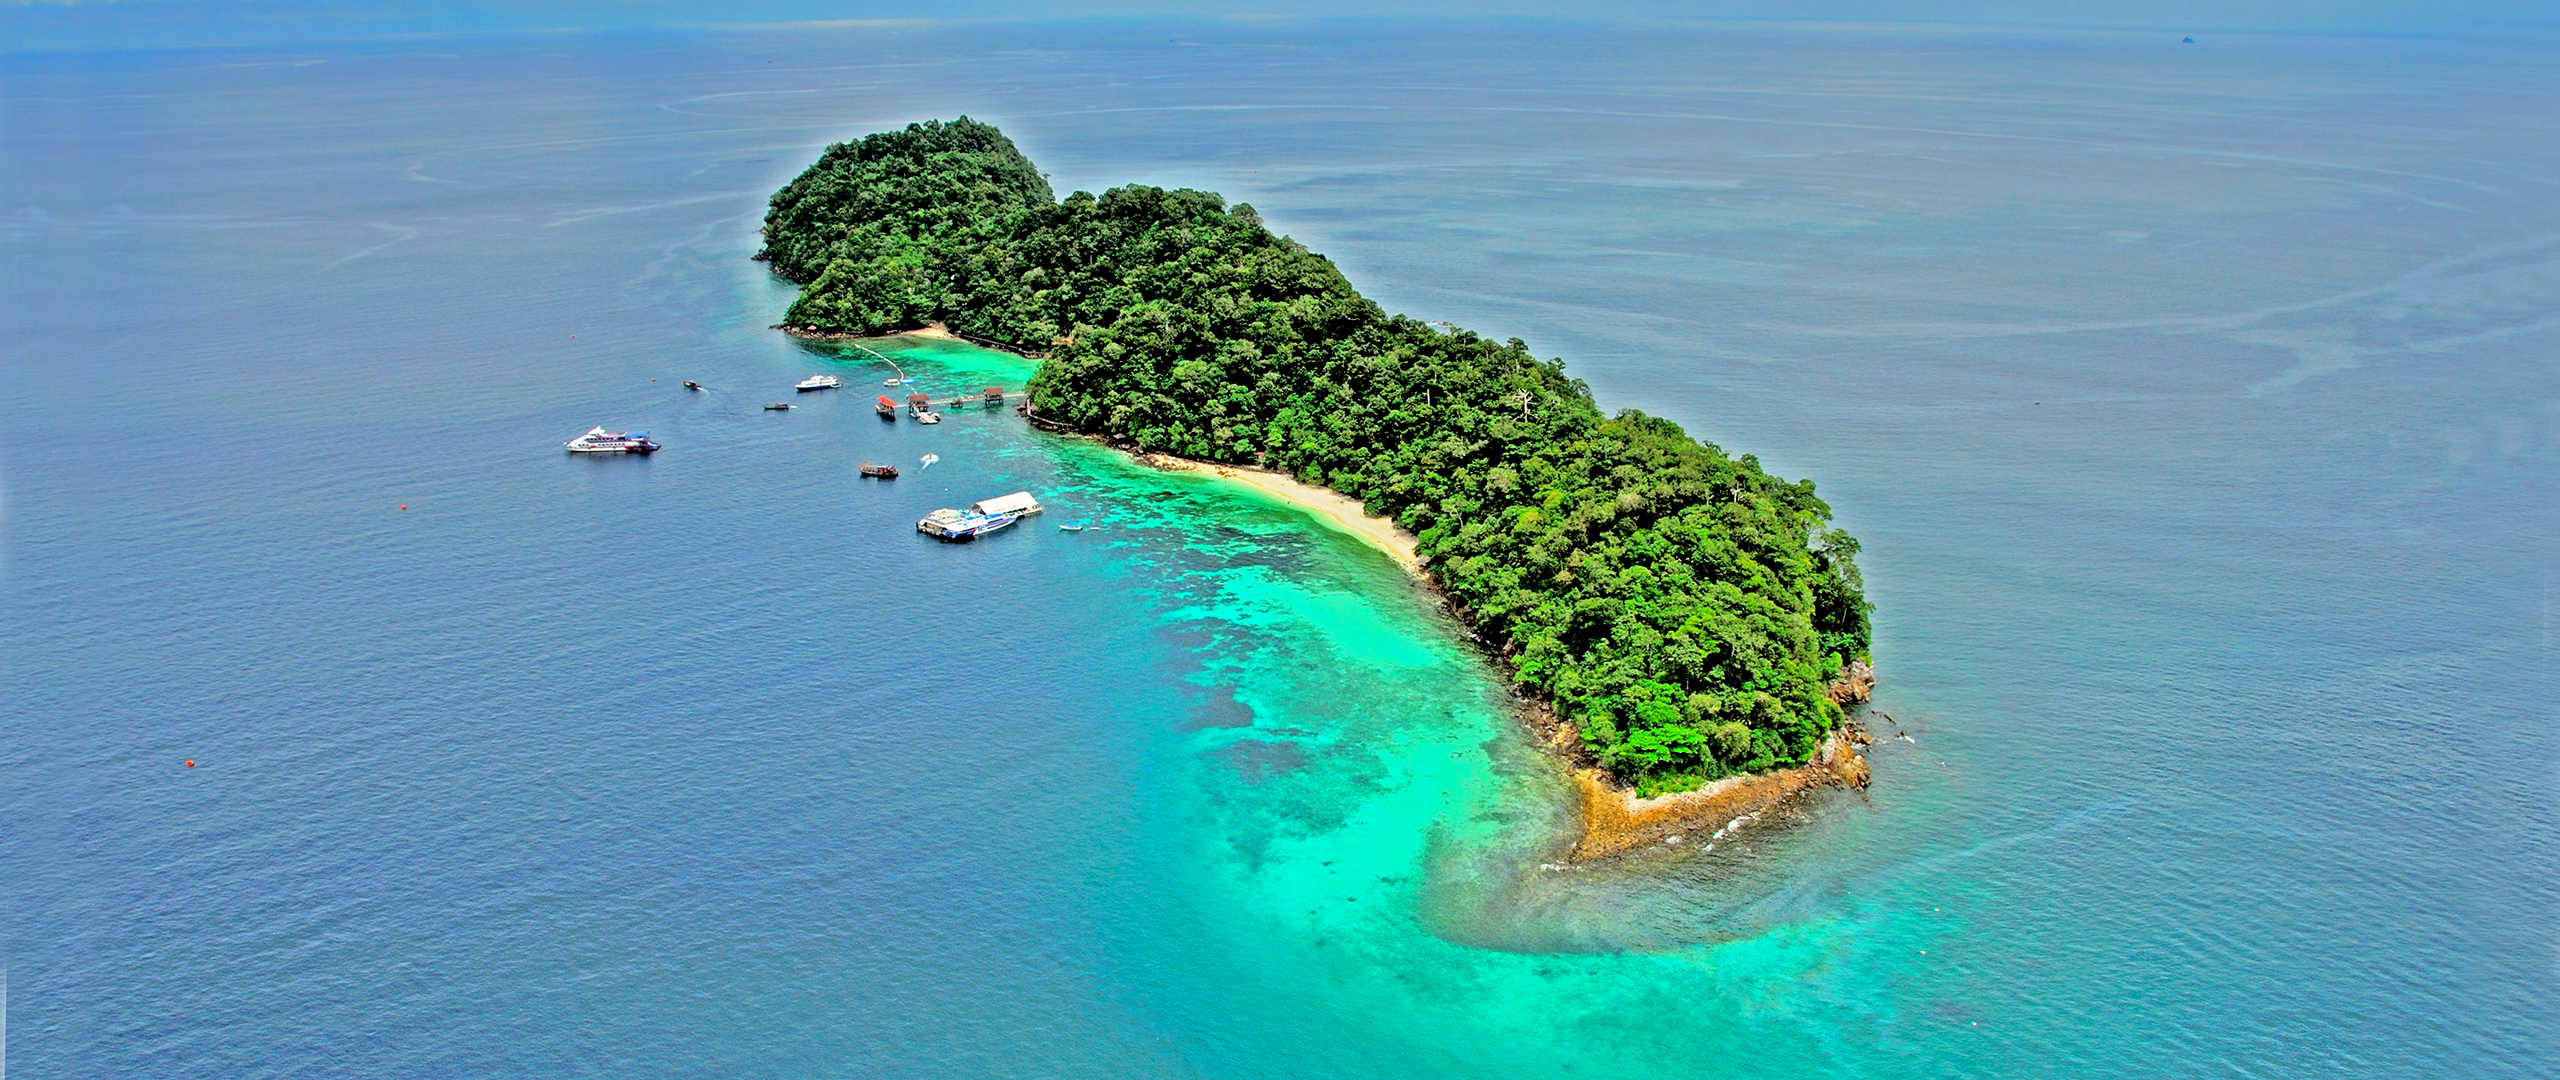 Mořský park Pulau Payar